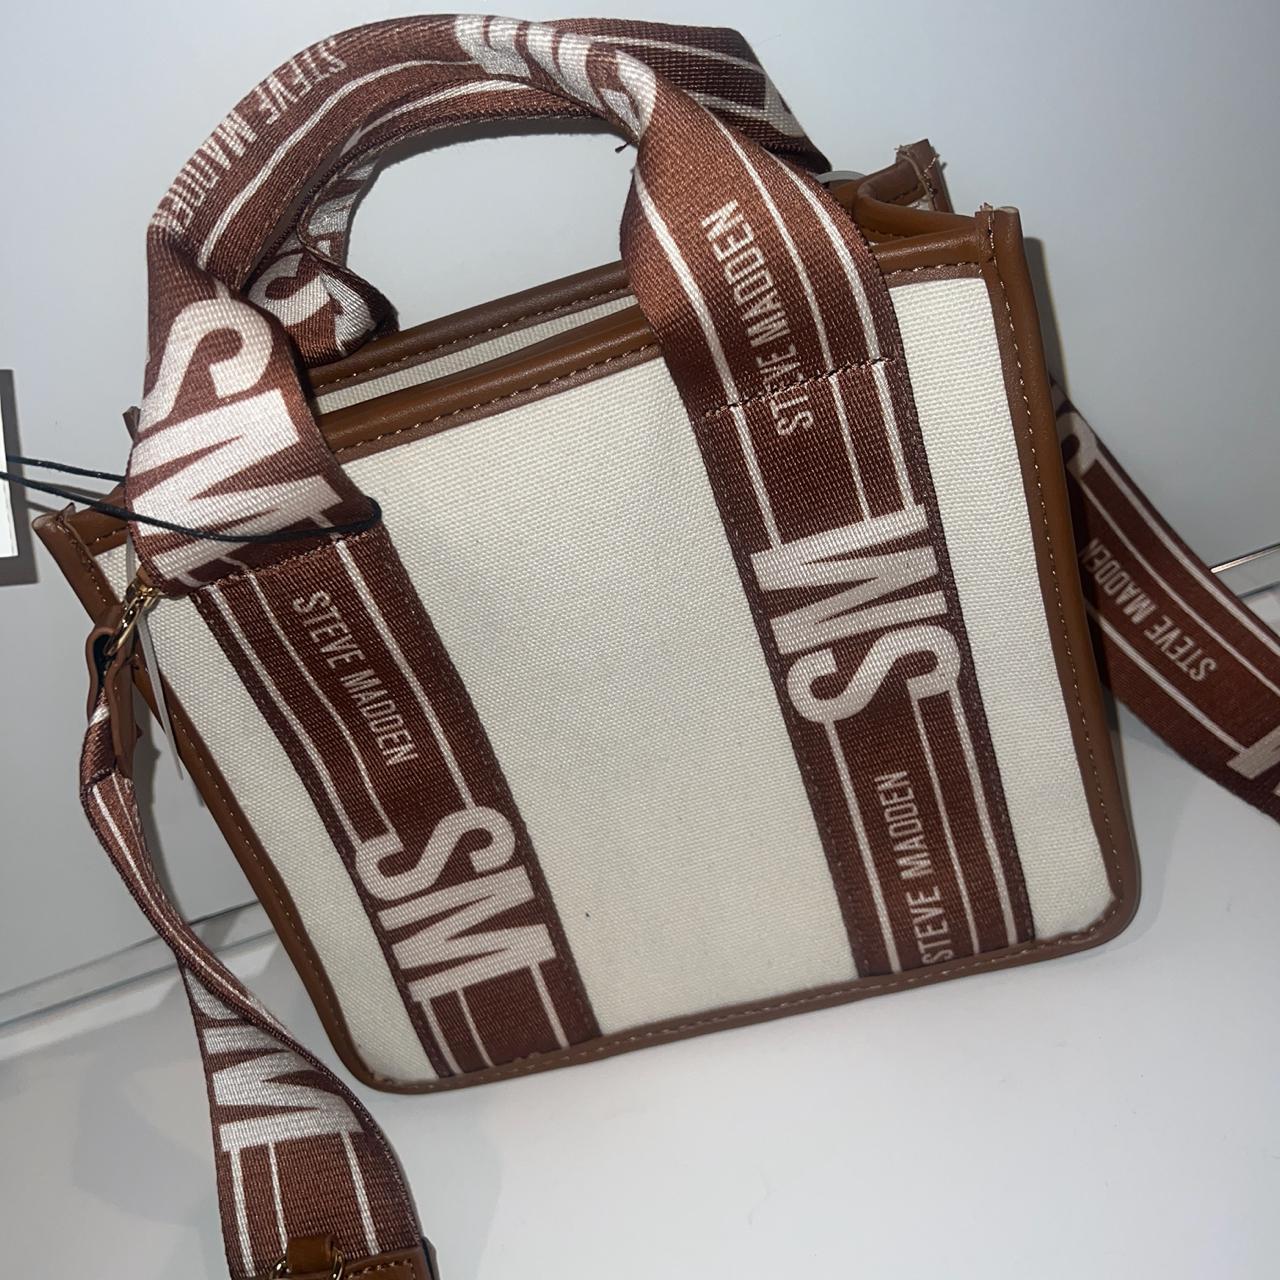 Steve Madden Camel brown bag 🐫 3 compartment bag as - Depop